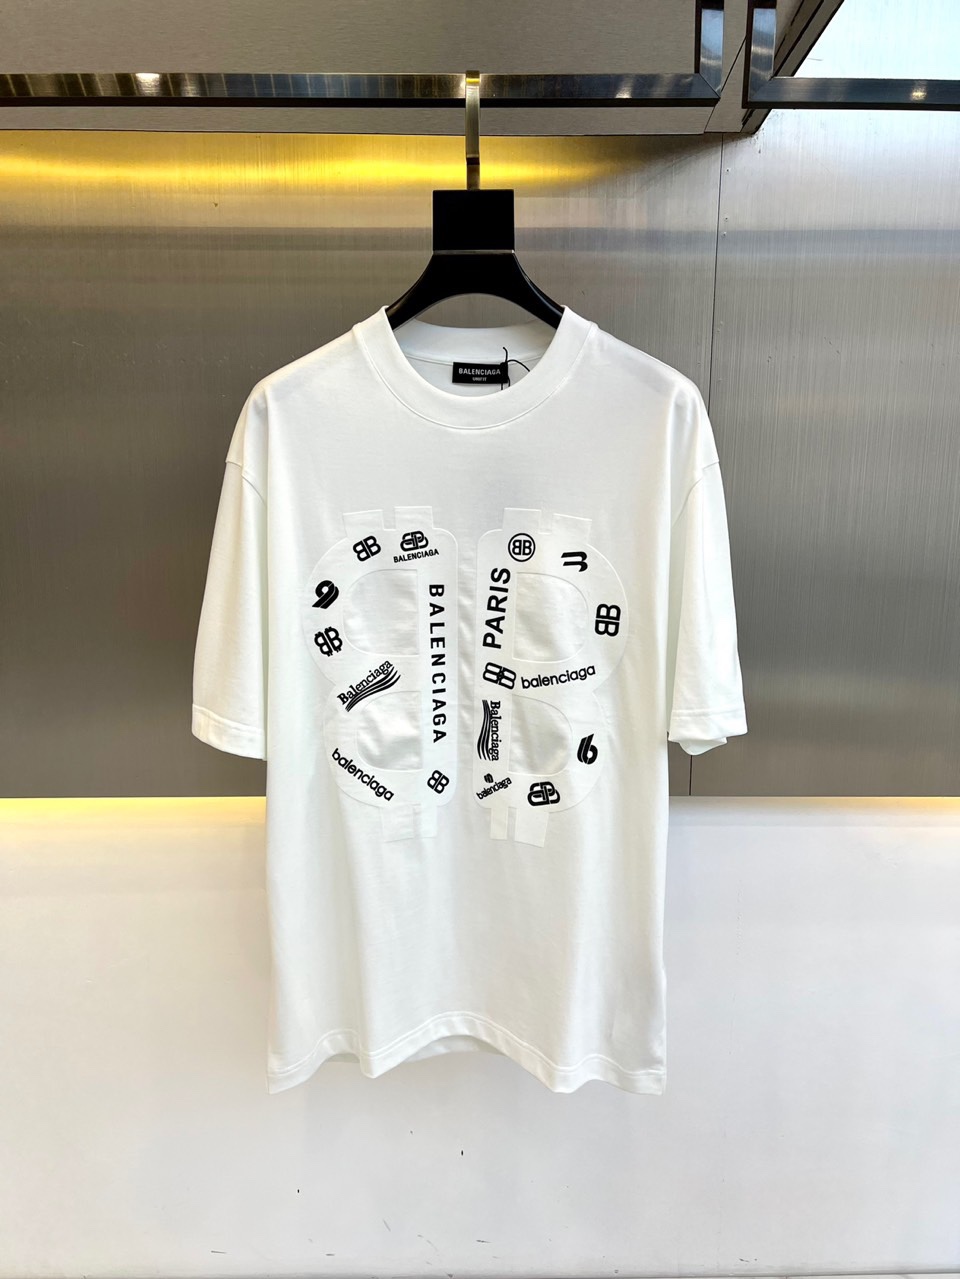 Balenciaga Clothing T-Shirt Cotton Summer Collection Short Sleeve